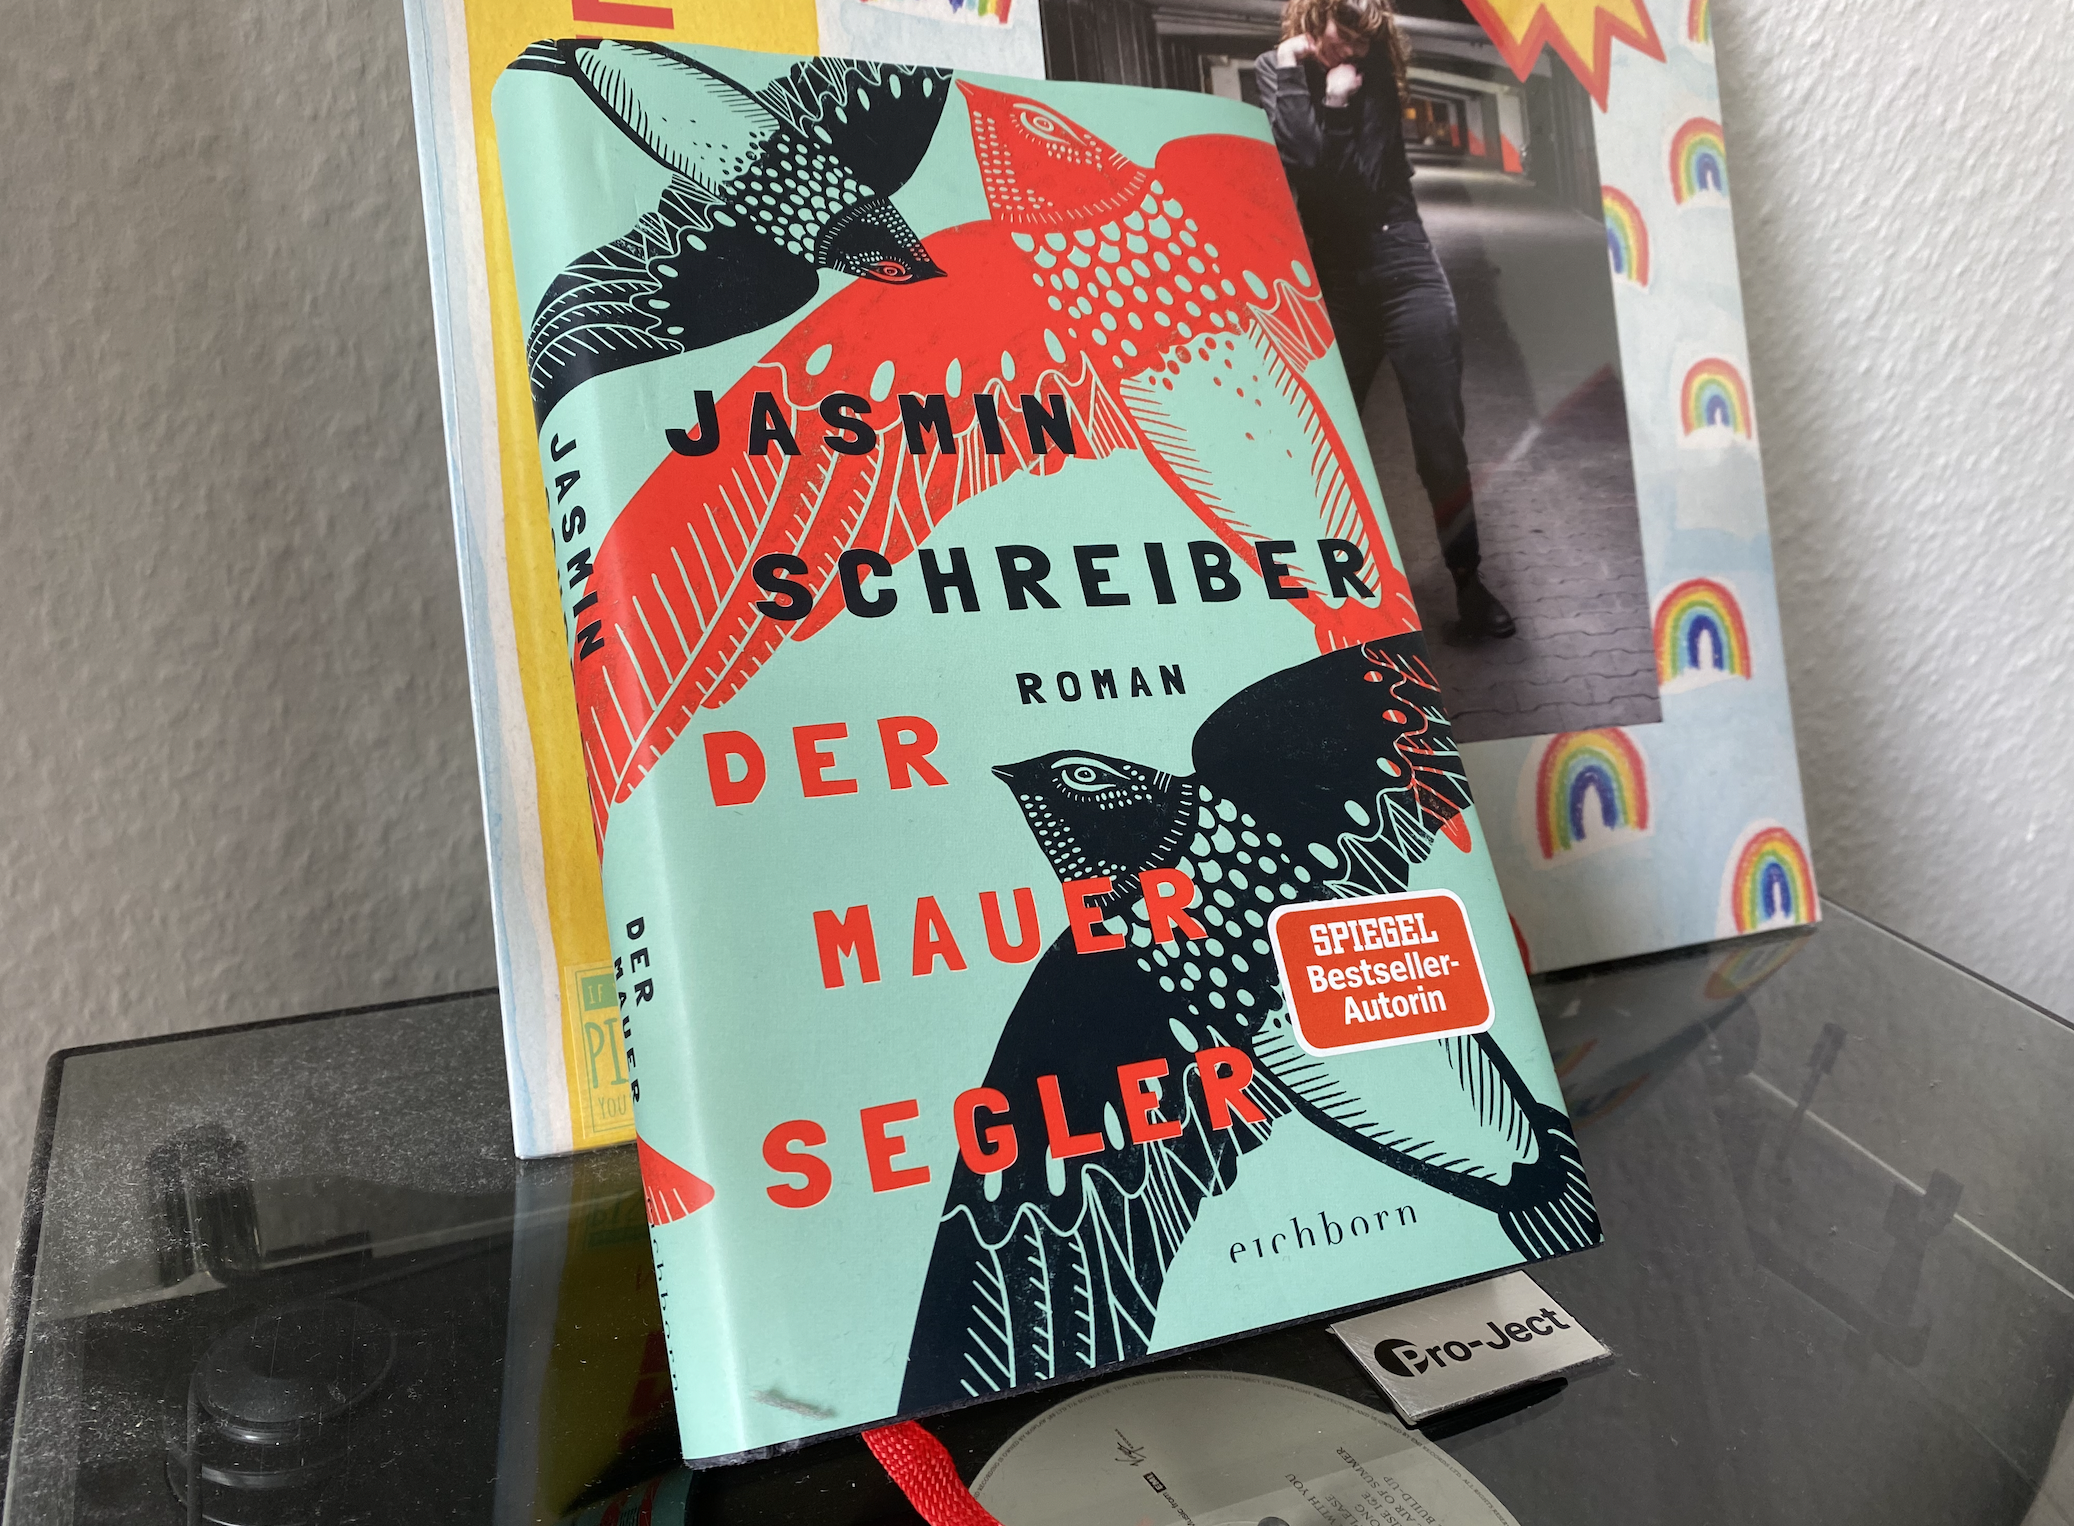 DER MAUERSEGLER – Jasmin Schreiber